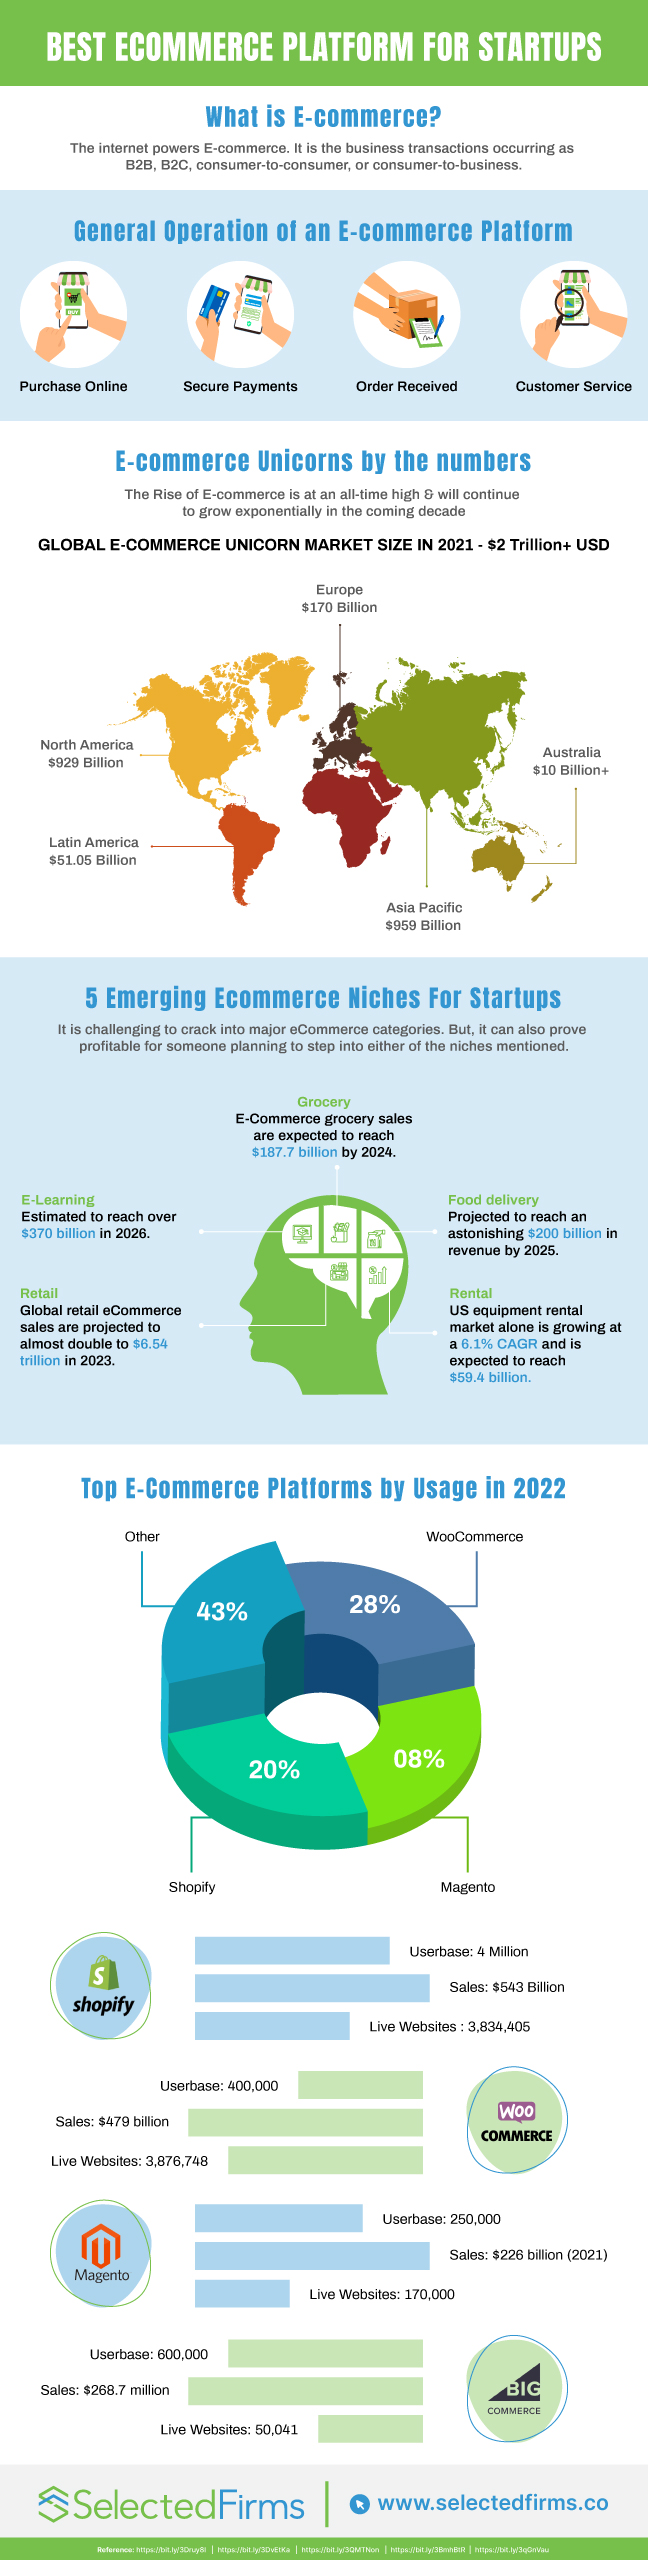 Best Ecommerce Platform for Startups- Infographic